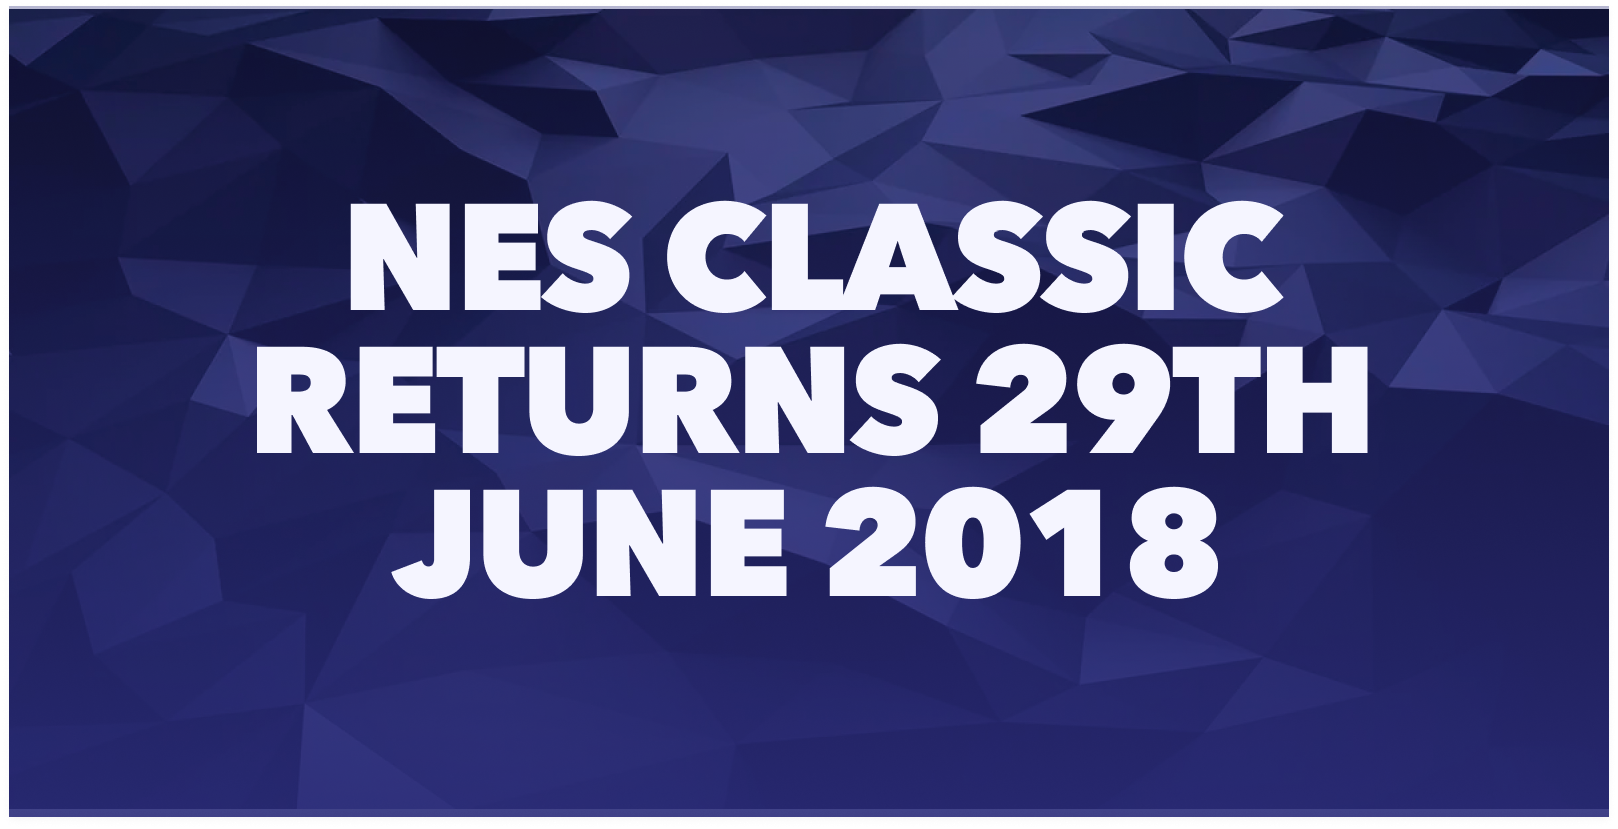 NES Classic returns 29th June 2018 Graphic